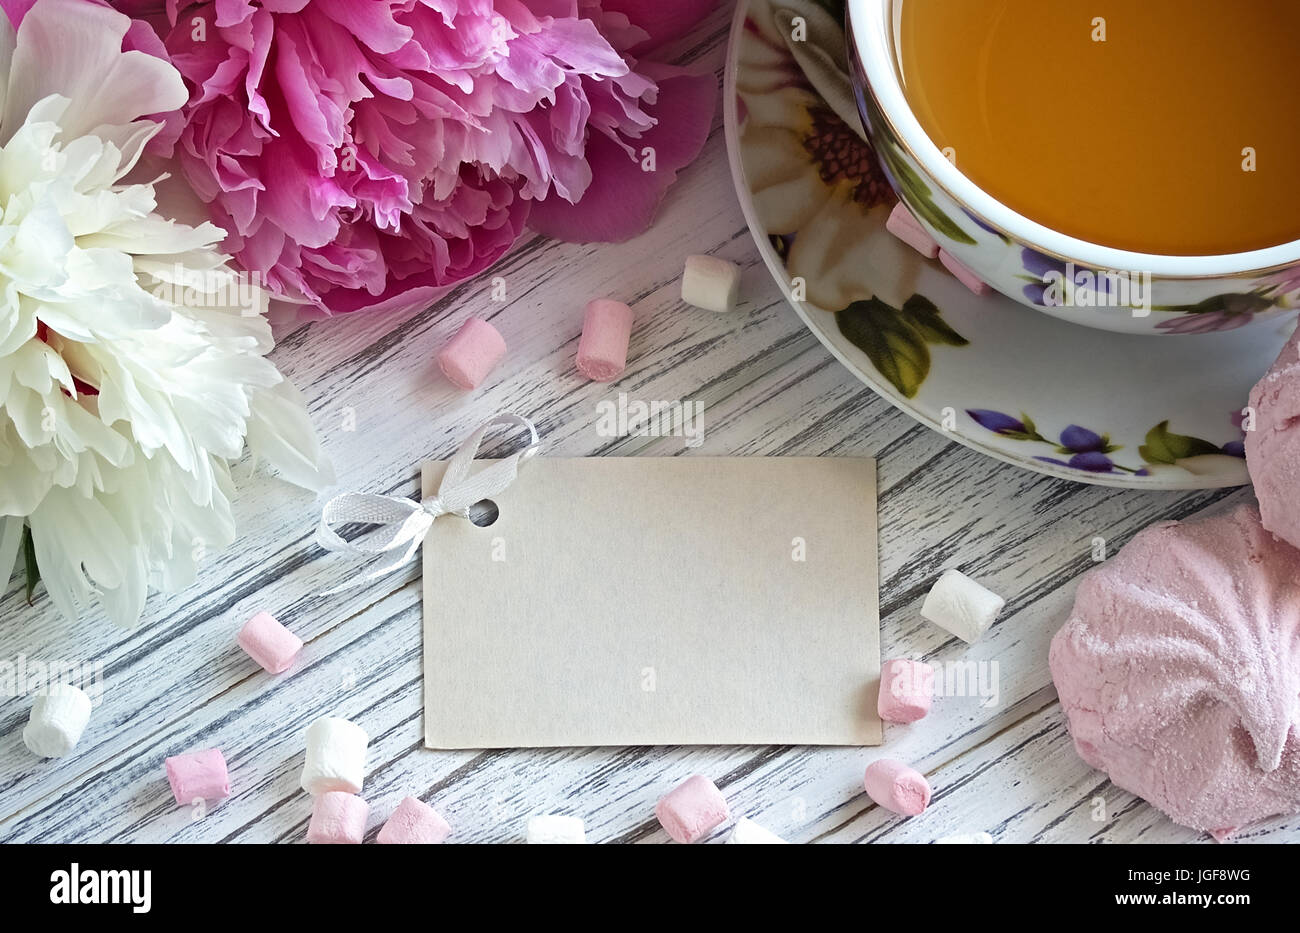 Les Pivoines rose fleurs tasse de thé carte de souhaits marshmallow sur un fond en bois blanc - stock image Banque D'Images